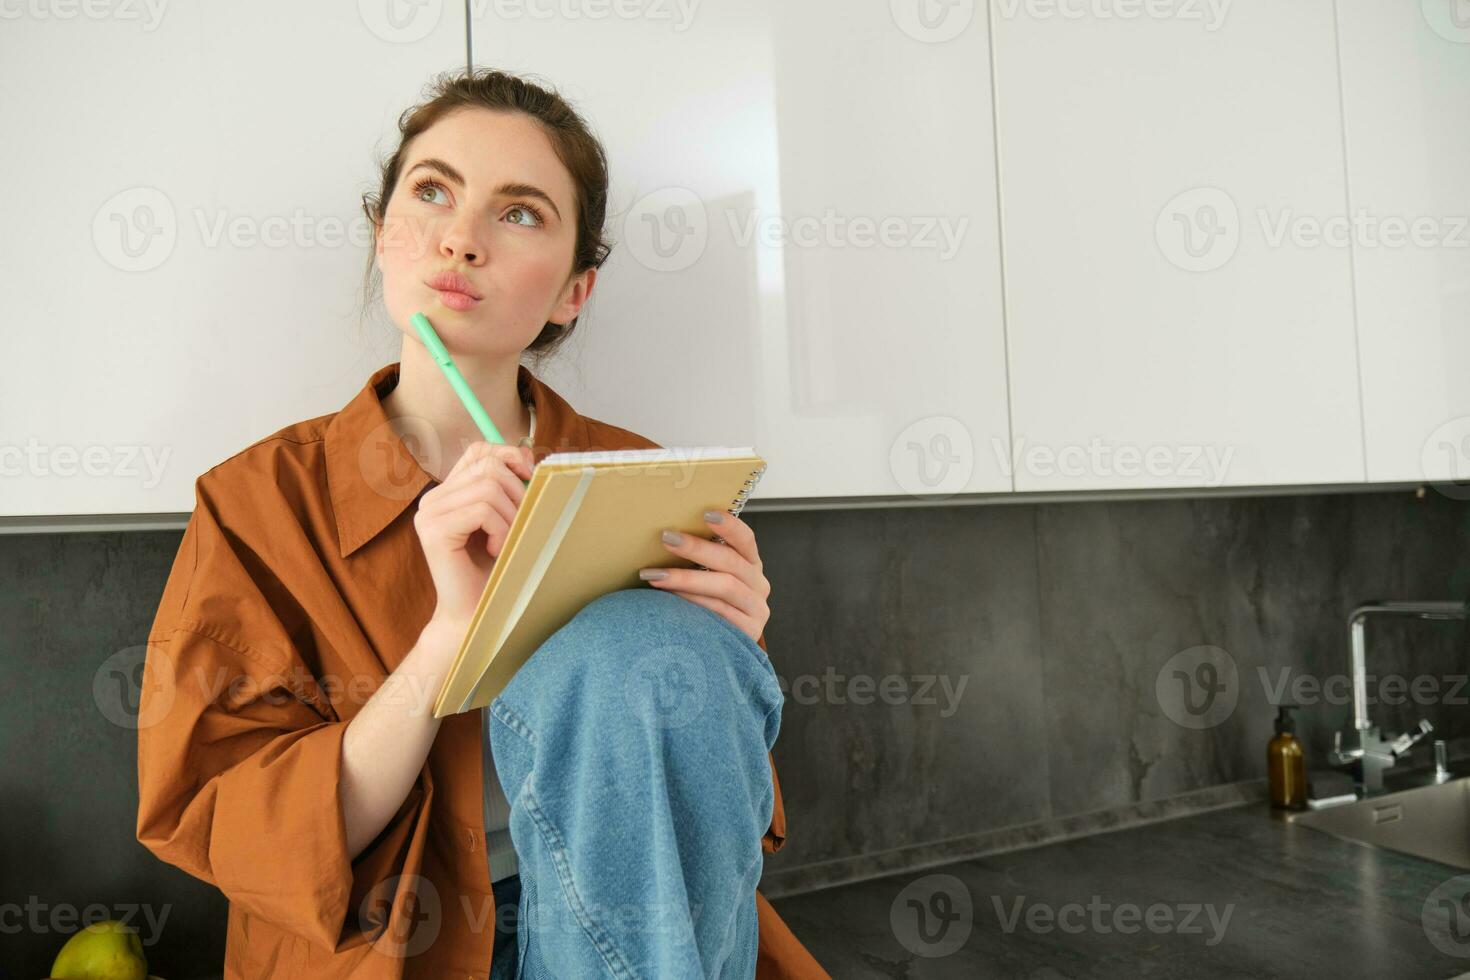 image de Jeune Créatif femme, artiste dessin croquis dans sa carnet de notes, séance sur cuisine compteur à Accueil avec réfléchi visage photo